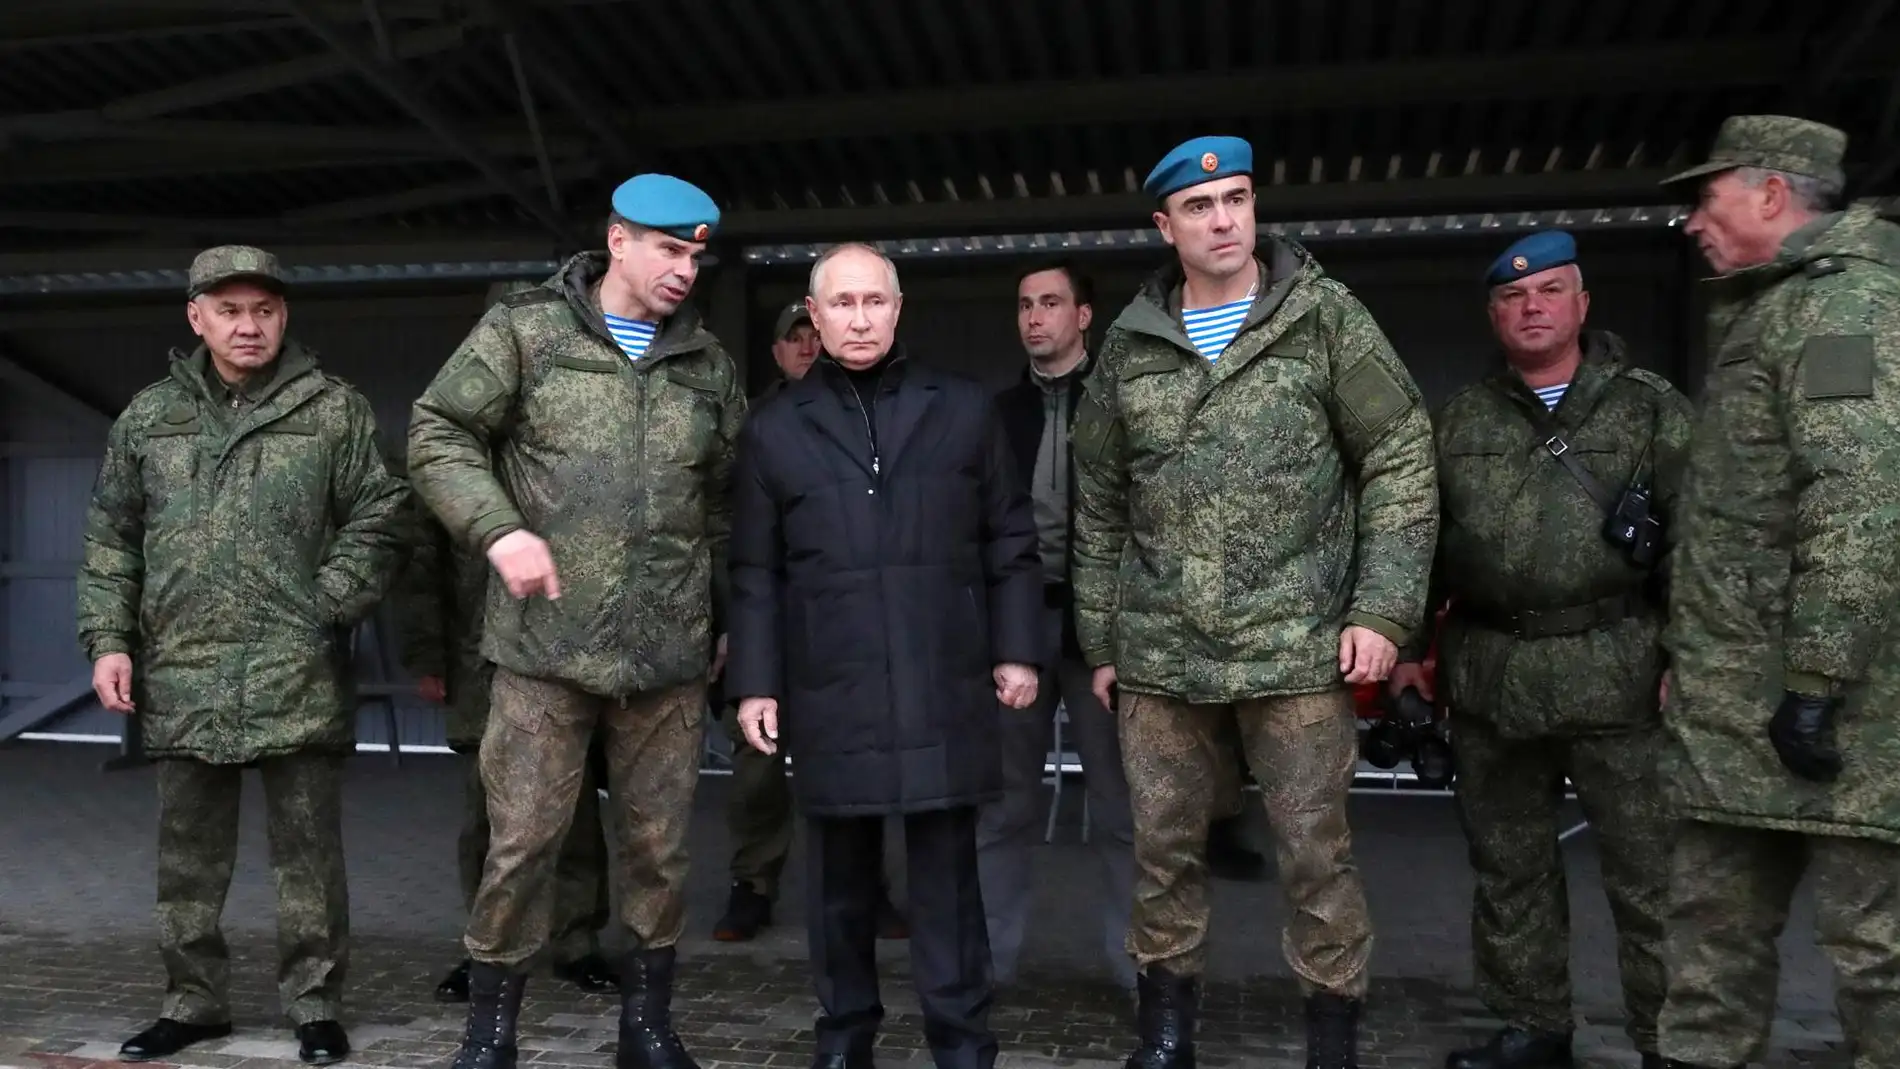  Vladimir Putin visita por sorpresa Jersón y Lugansk para evaluar la situación 